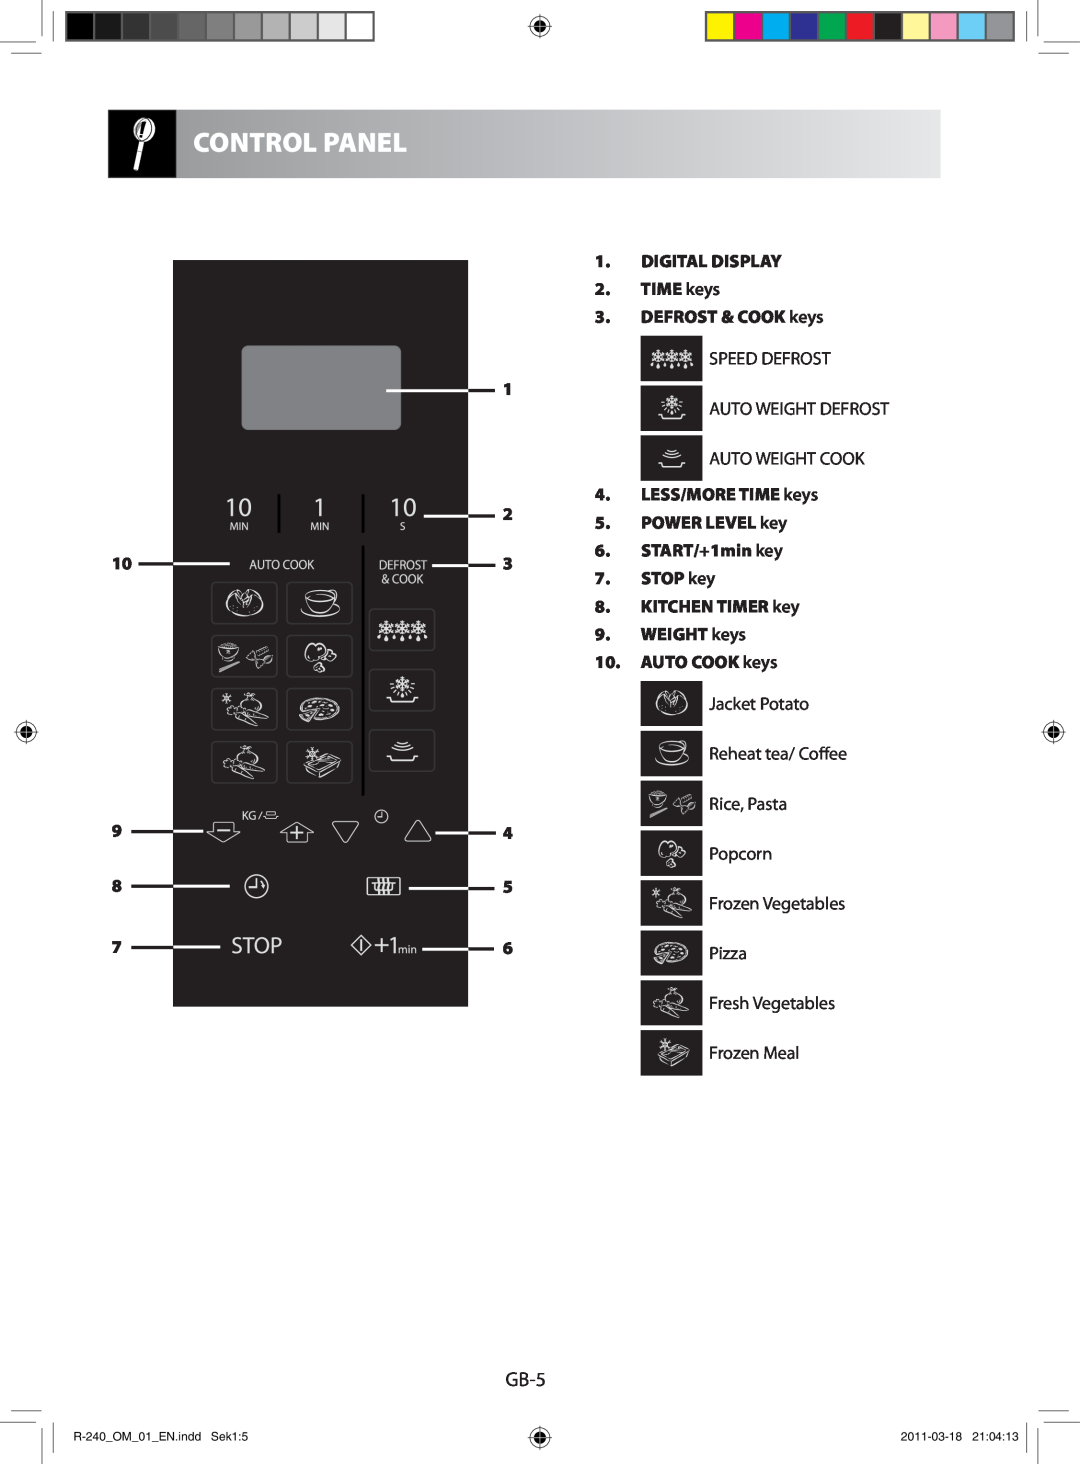 Sharp manual Control Panel, GB-5, Auto Cook, Defrost & Cook, R-240 OM 01 EN.inddSek1, 2011-03-1821:04:13 